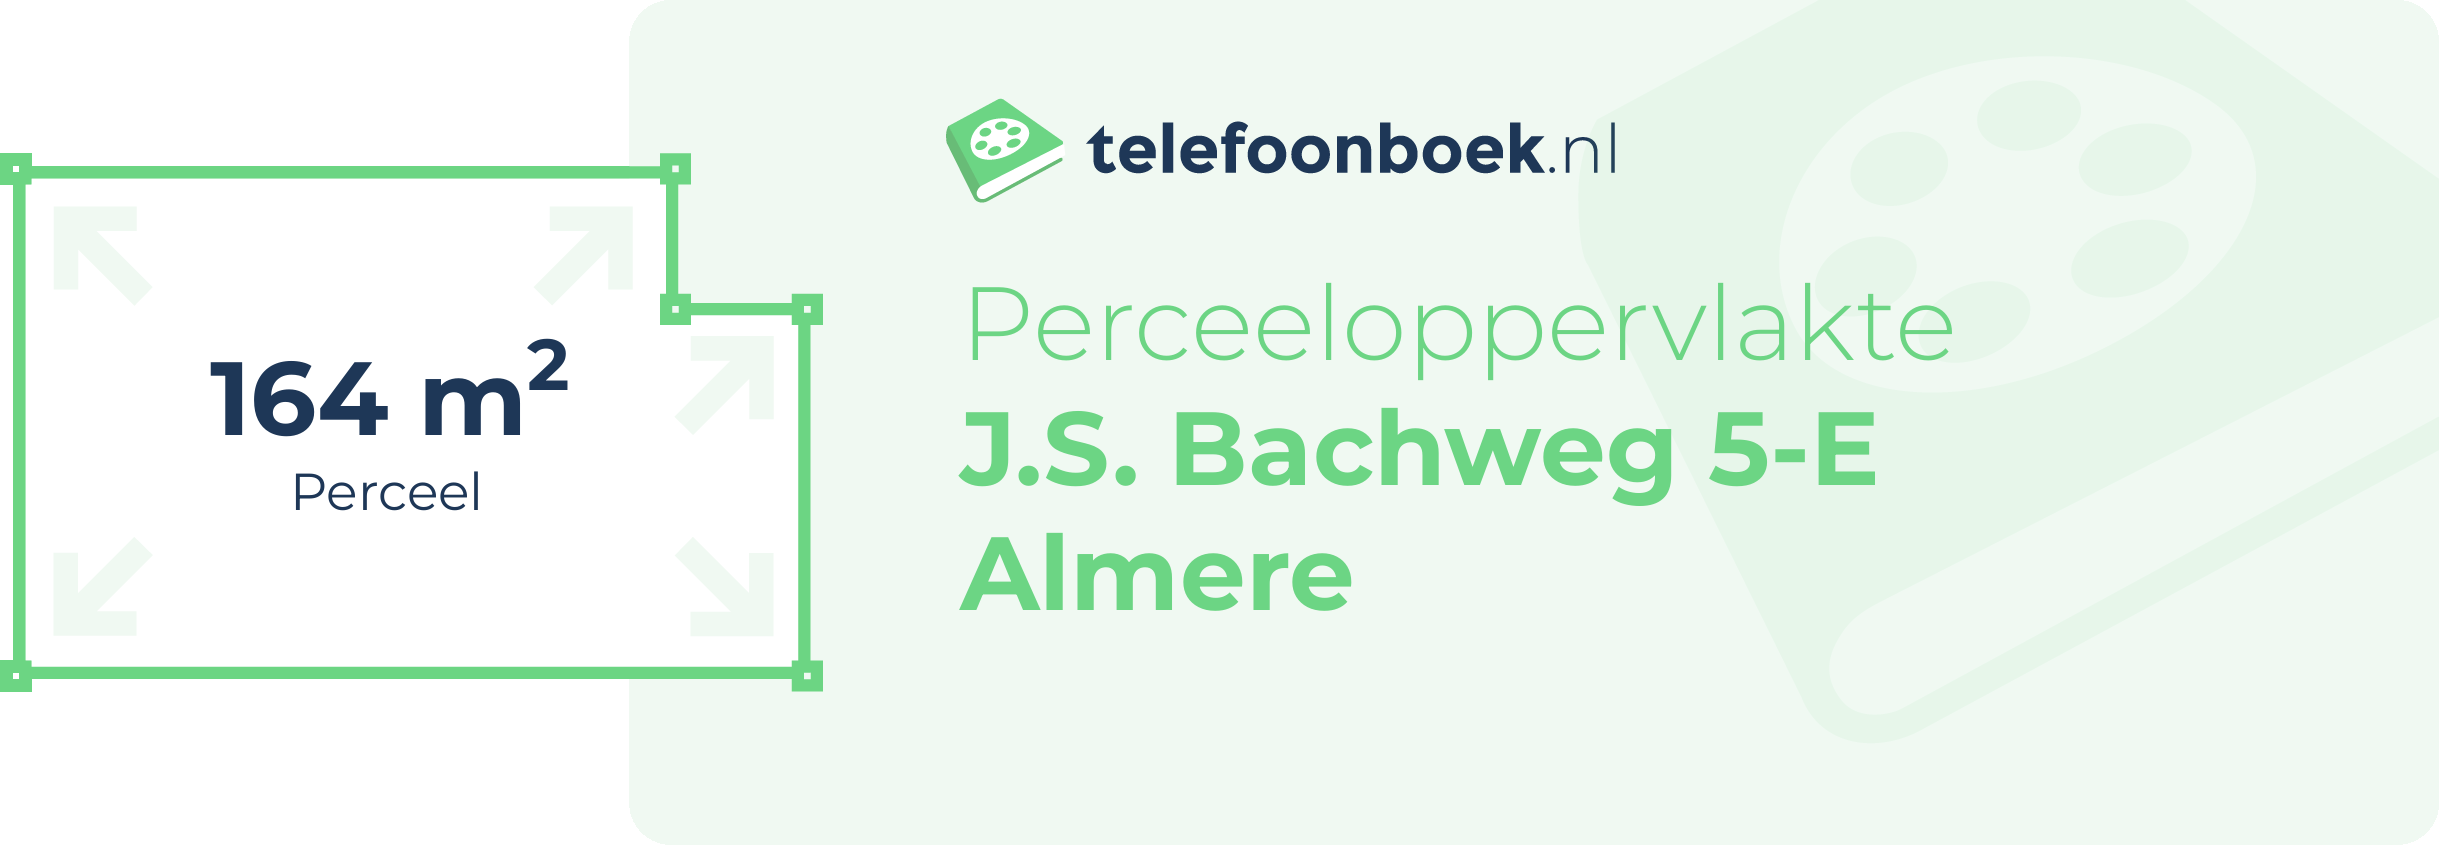 Perceeloppervlakte J.S. Bachweg 5-E Almere